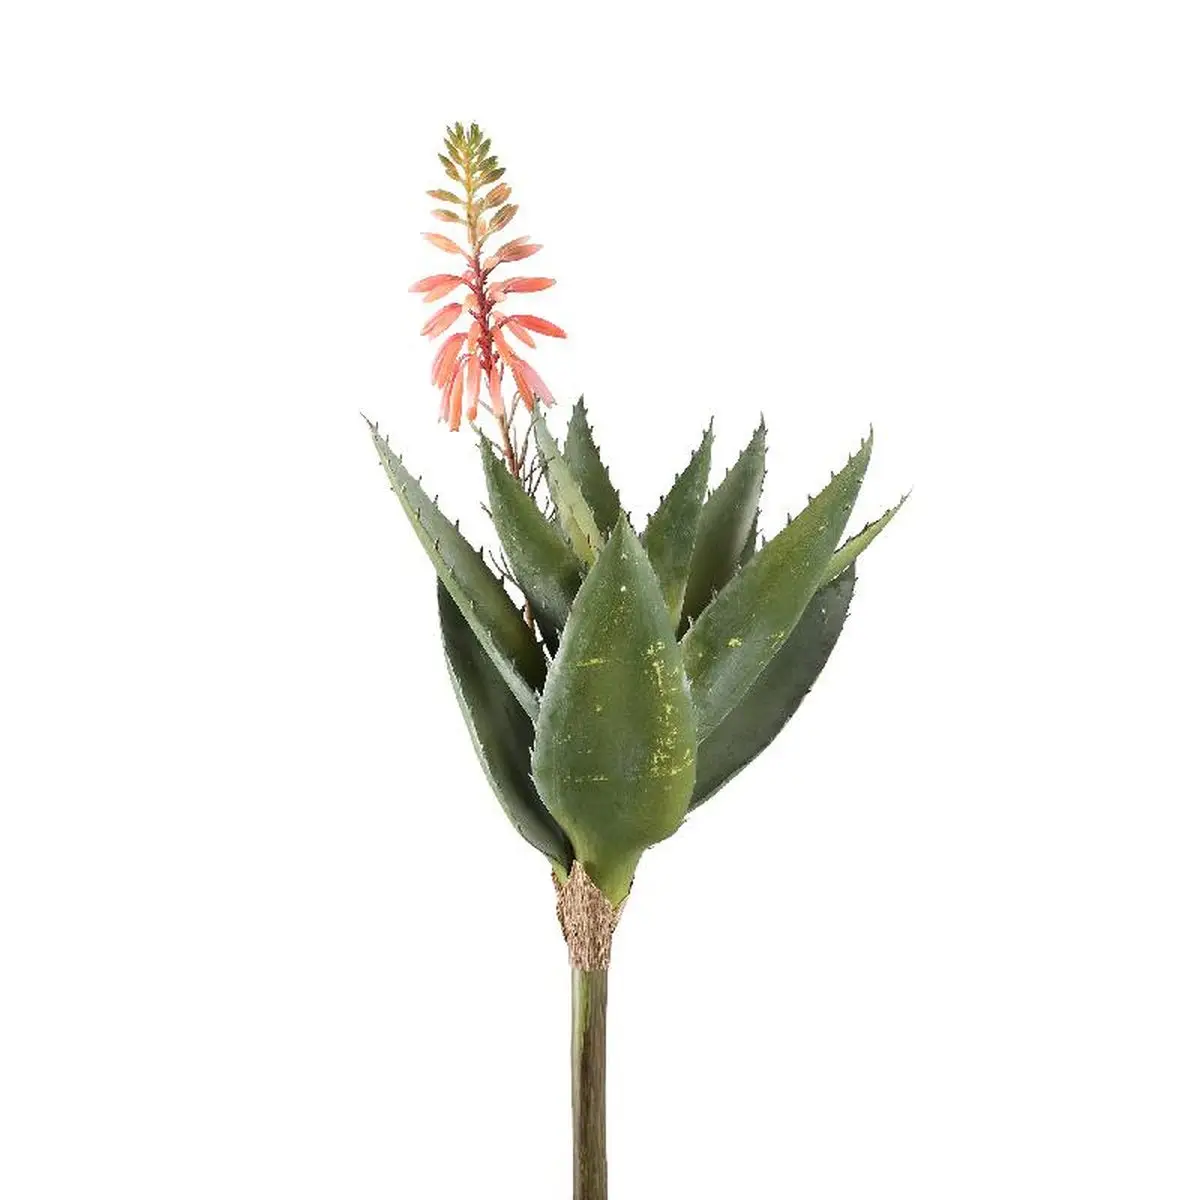 K眉nstliche Pflanze Succulent